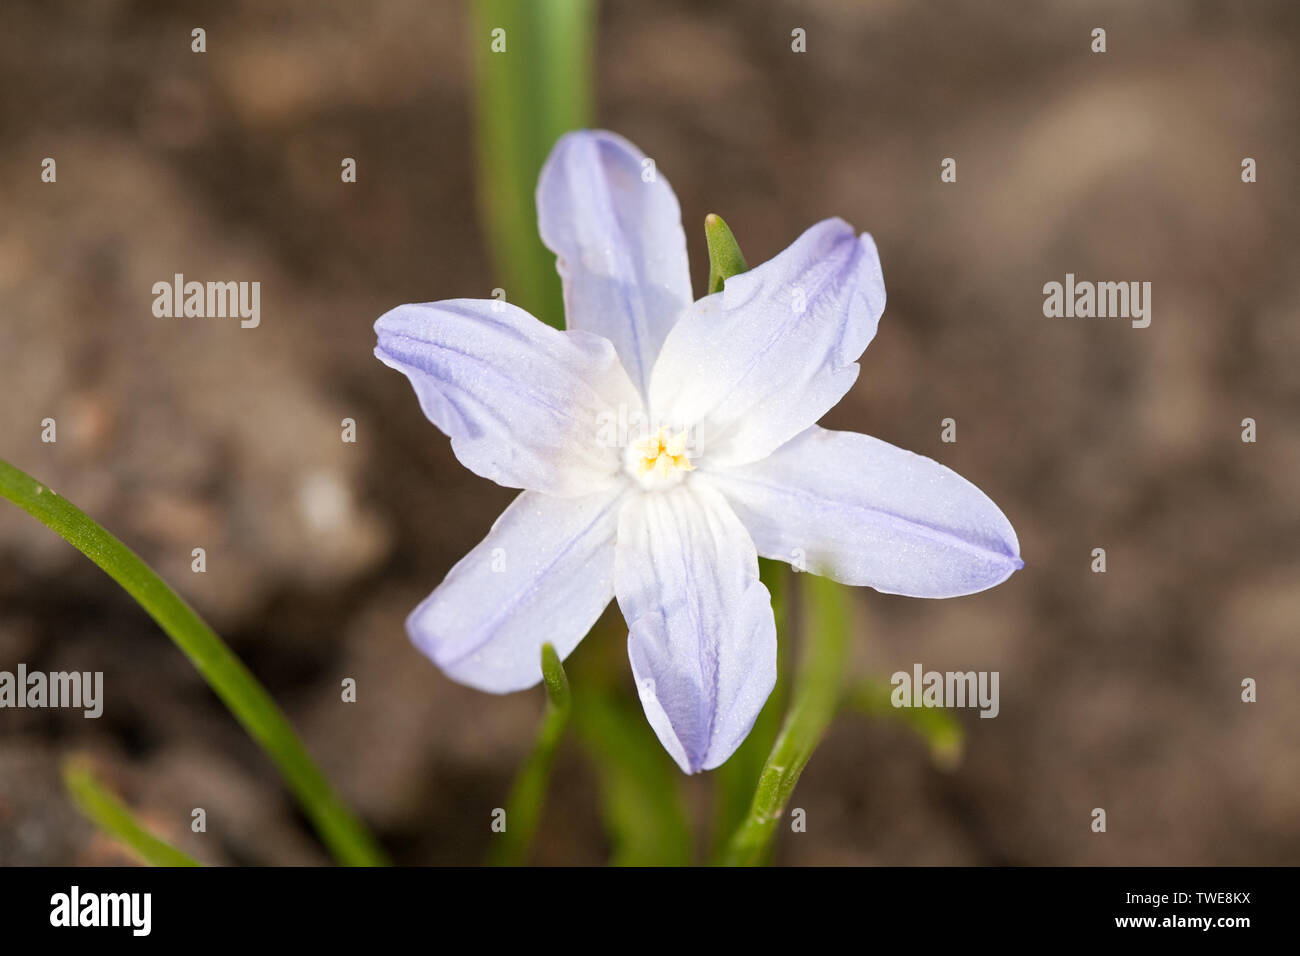 light blue snowdrop spring flower closeup view on dark ground background Stock Photo